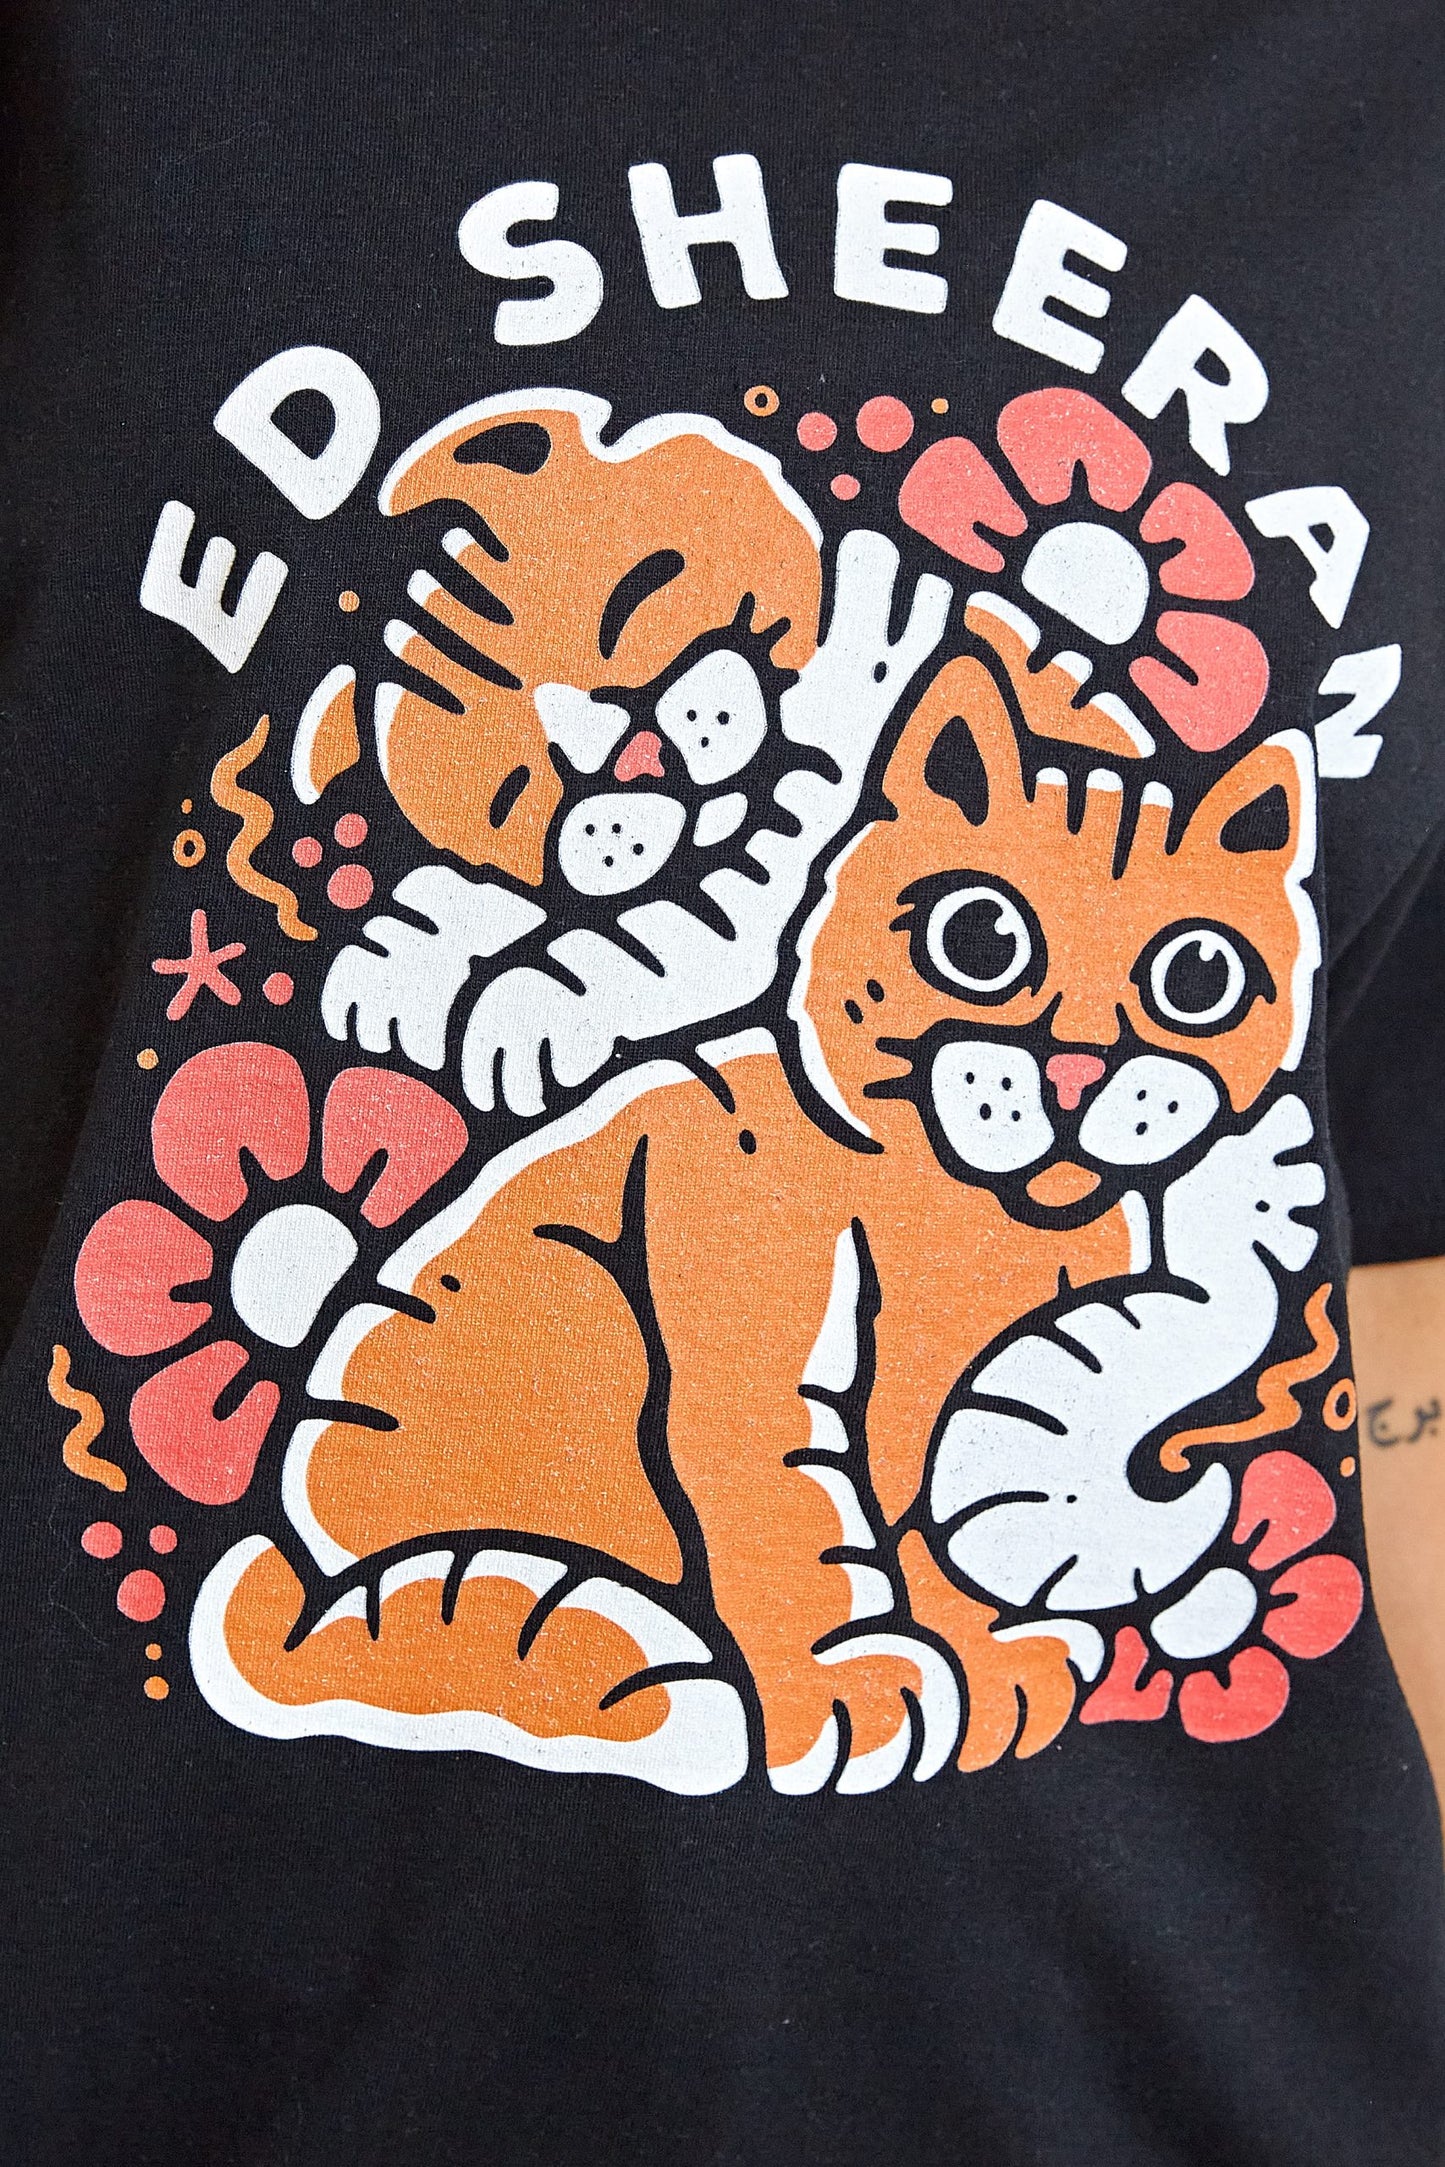 Daisy Street - Ed Sheeran Cute Cats Tee